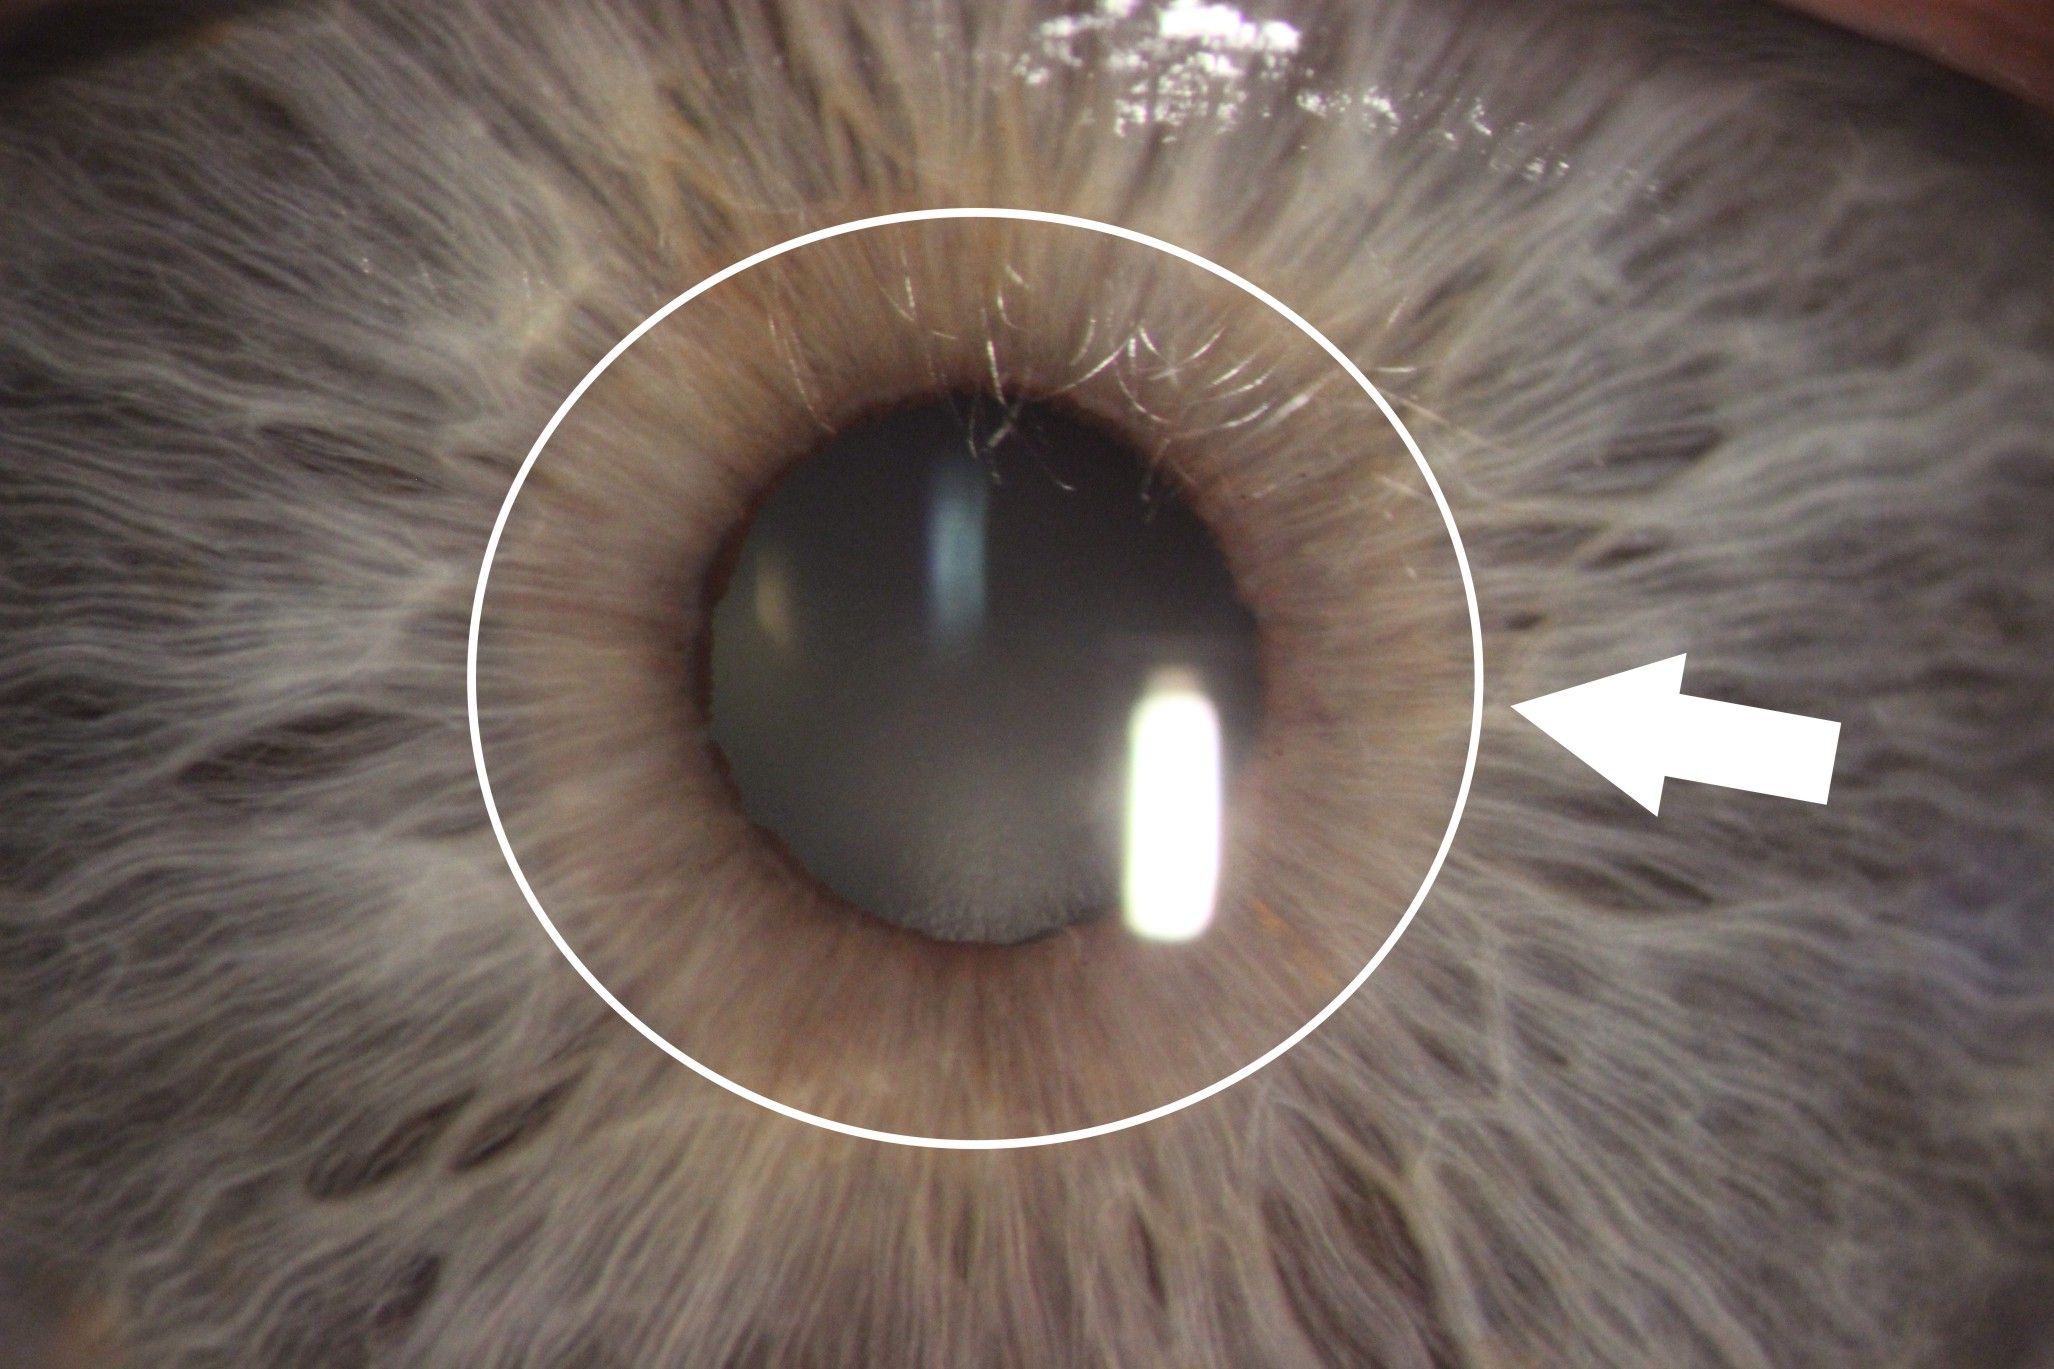 Zdjęcie tęczówki oka z aparatu podczas badania. Są zaznaczone strzałki i kółeczka wskazujące zmiany na tęczówce. 